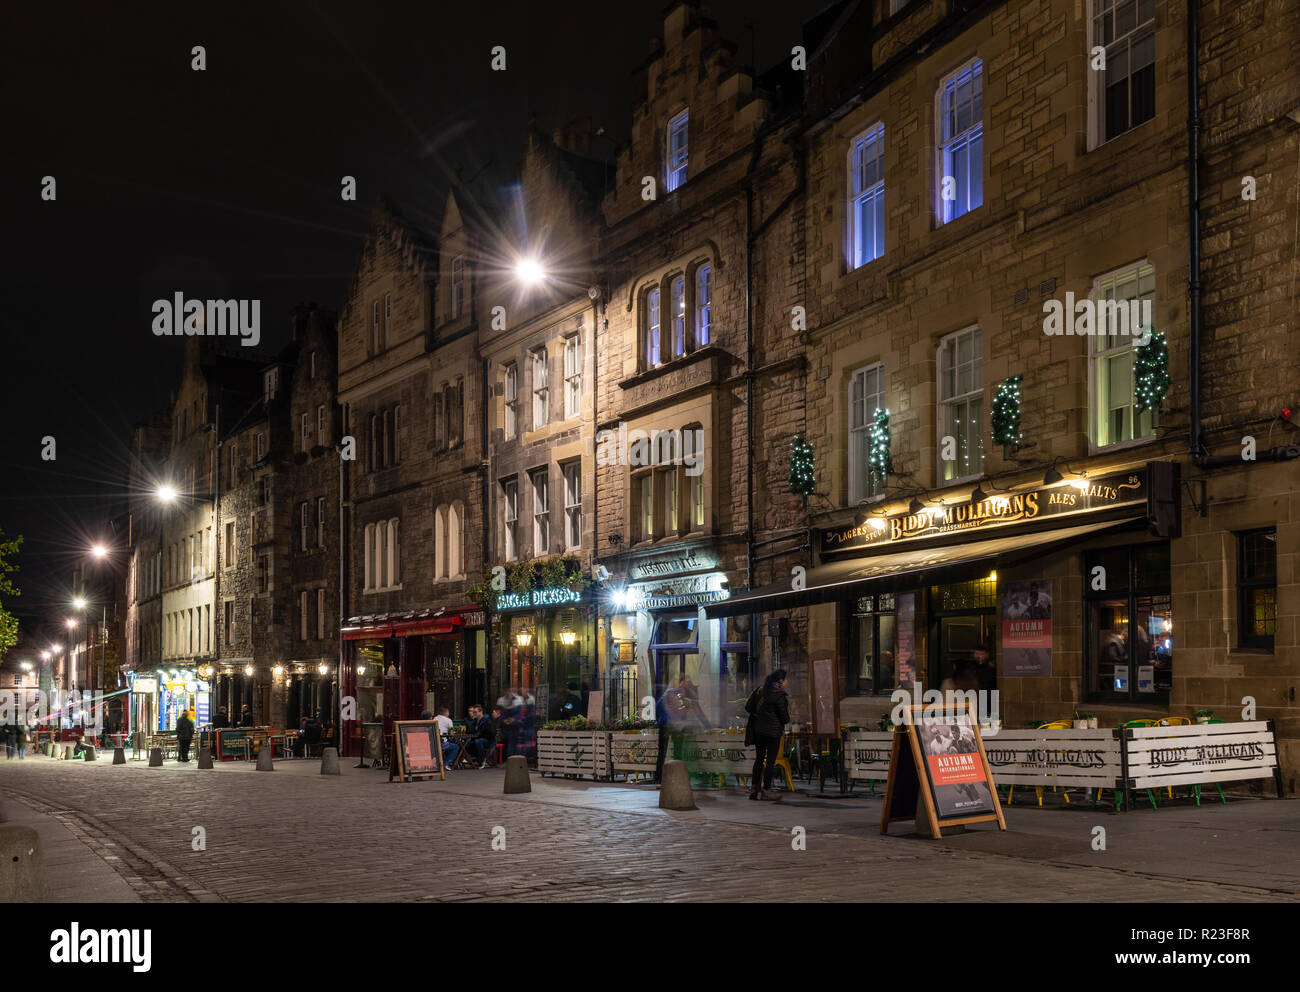 Edimburgo, Escocia, Reino Unido - 2 de noviembre de 2018: Los apostadores copa fuera pubs y bares a lo largo de Edimburgo adoquines tradicionales Grassmarket street en la noche. Foto de stock